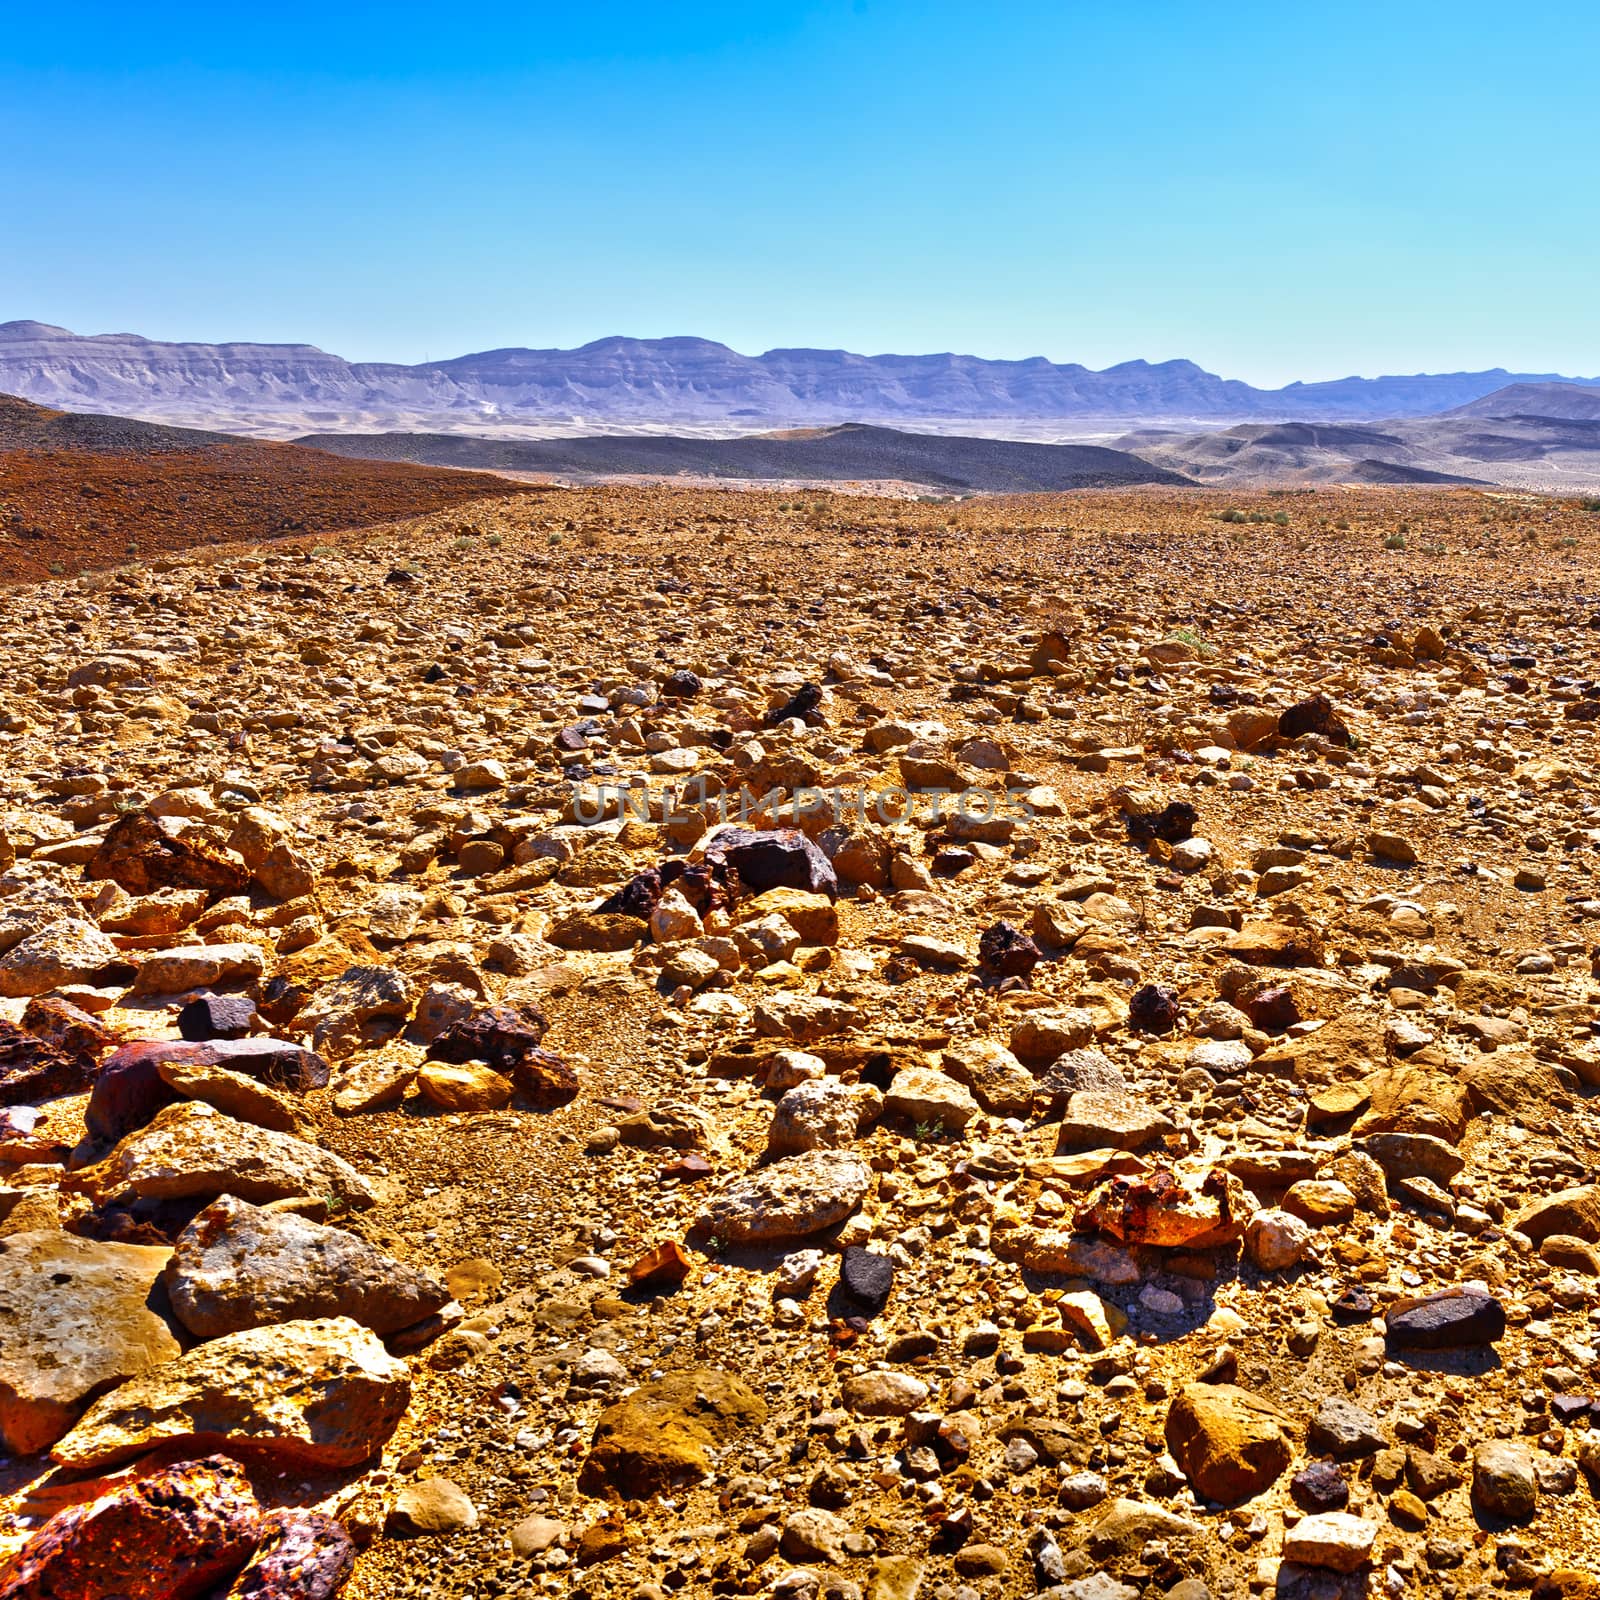 Big Stones of Grand Crater in Negev Desert, Israel